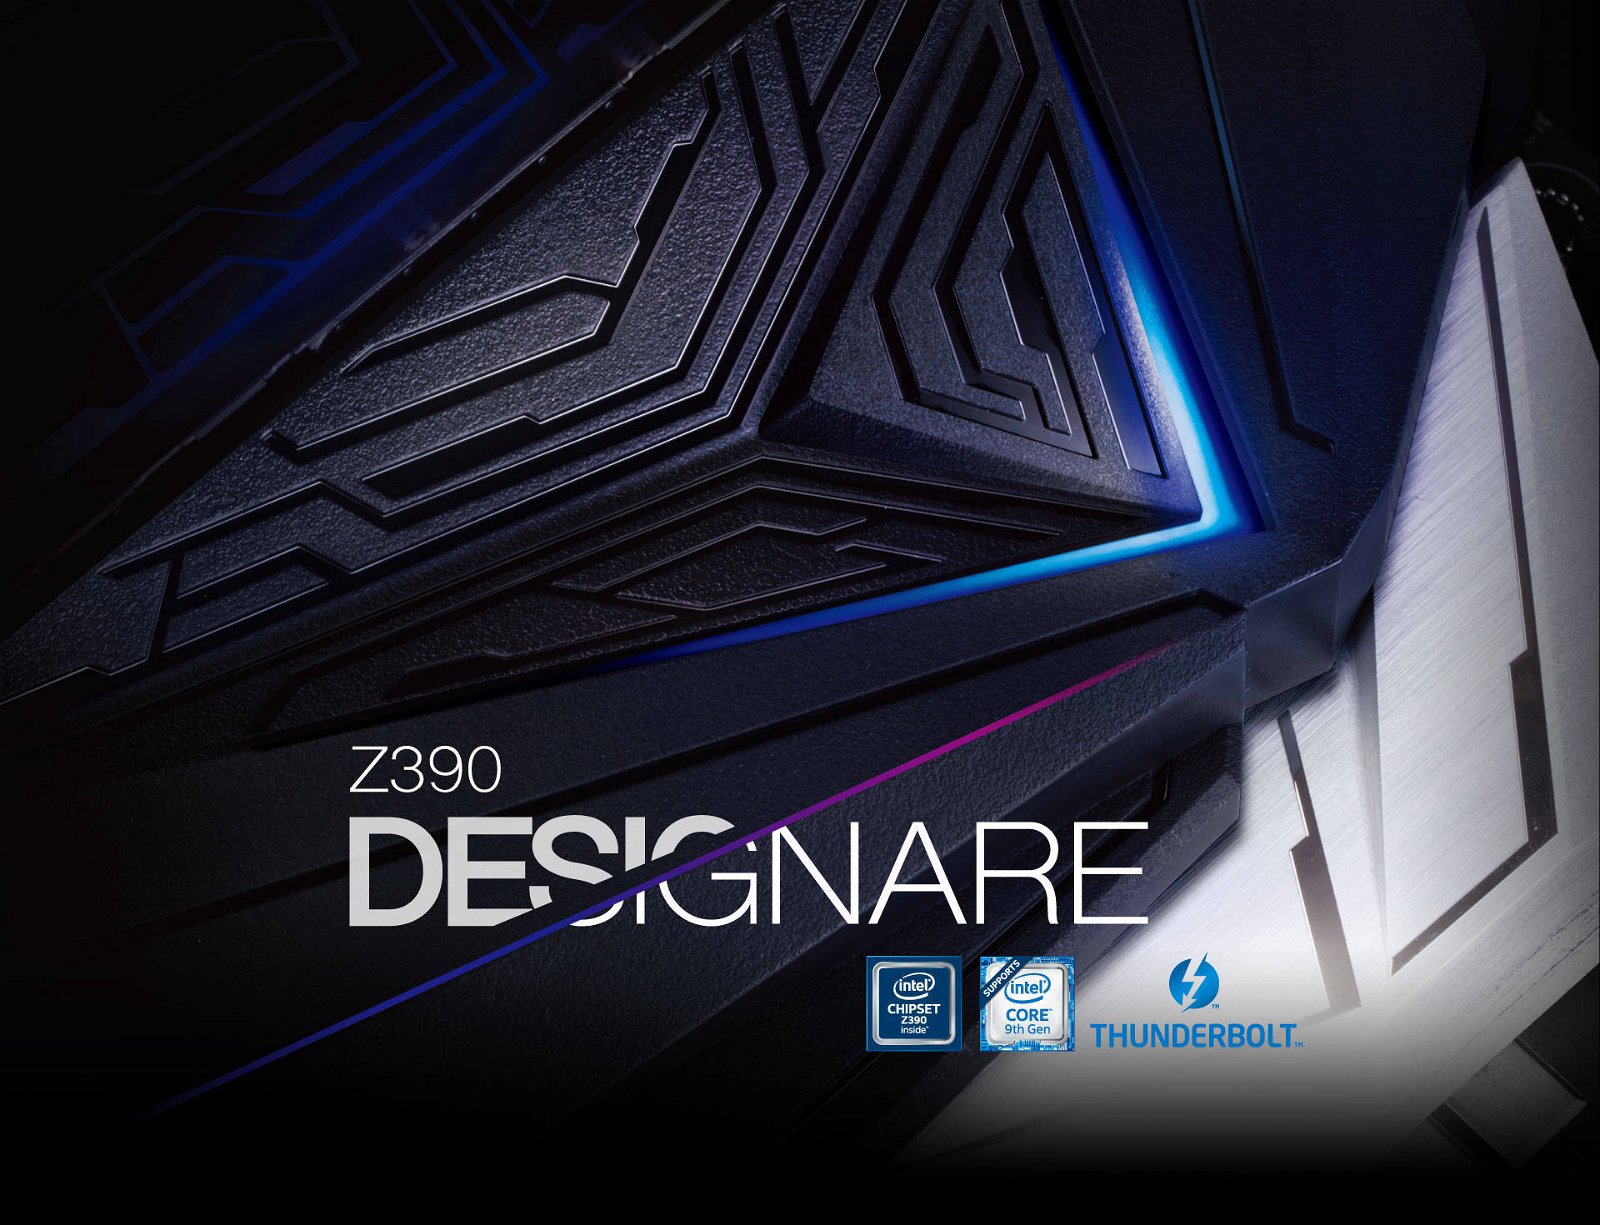 Immagine di Z390 Designare, la nuova scheda madre di Gigabyte pensata per i professionisti